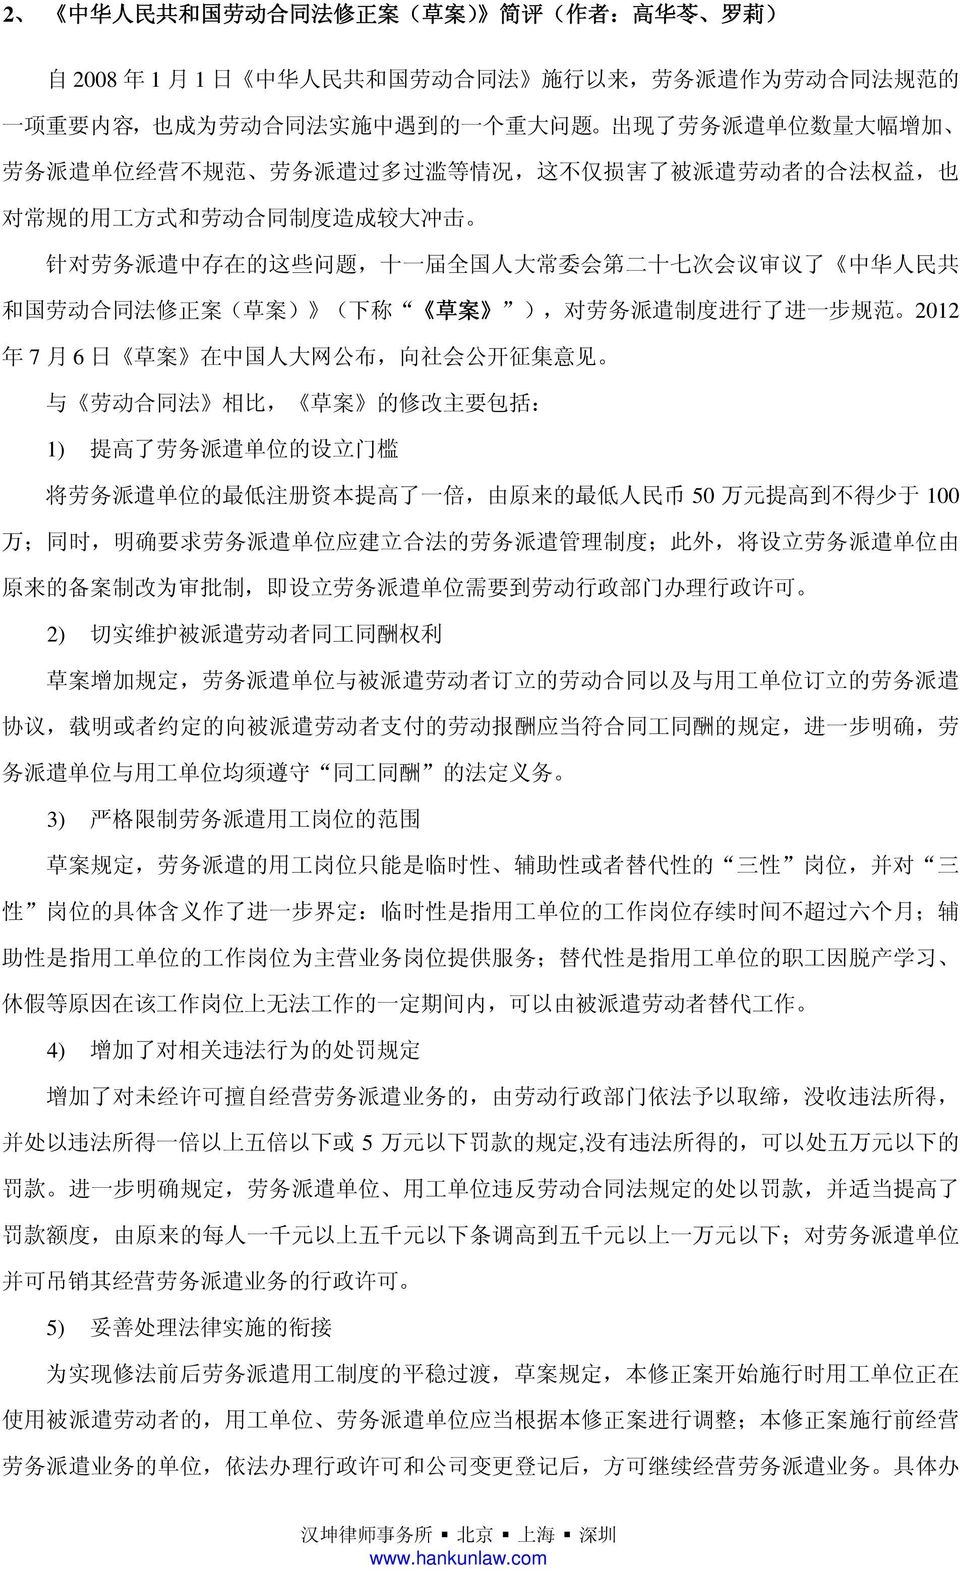 第 二 十 七 次 会 议 审 议 了 中 华 人 民 共 和 国 劳 动 合 同 法 修 正 案 ( 草 案 ) ( 下 称 草 案 ), 对 劳 务 派 遣 制 度 进 行 了 进 一 步 规 范 2012 年 7 月 6 日 草 案 在 中 国 人 大 网 公 布, 向 社 会 公 开 征 集 意 见 与 劳 动 合 同 法 相 比, 草 案 的 修 改 主 要 包 括 : 1) 提 高